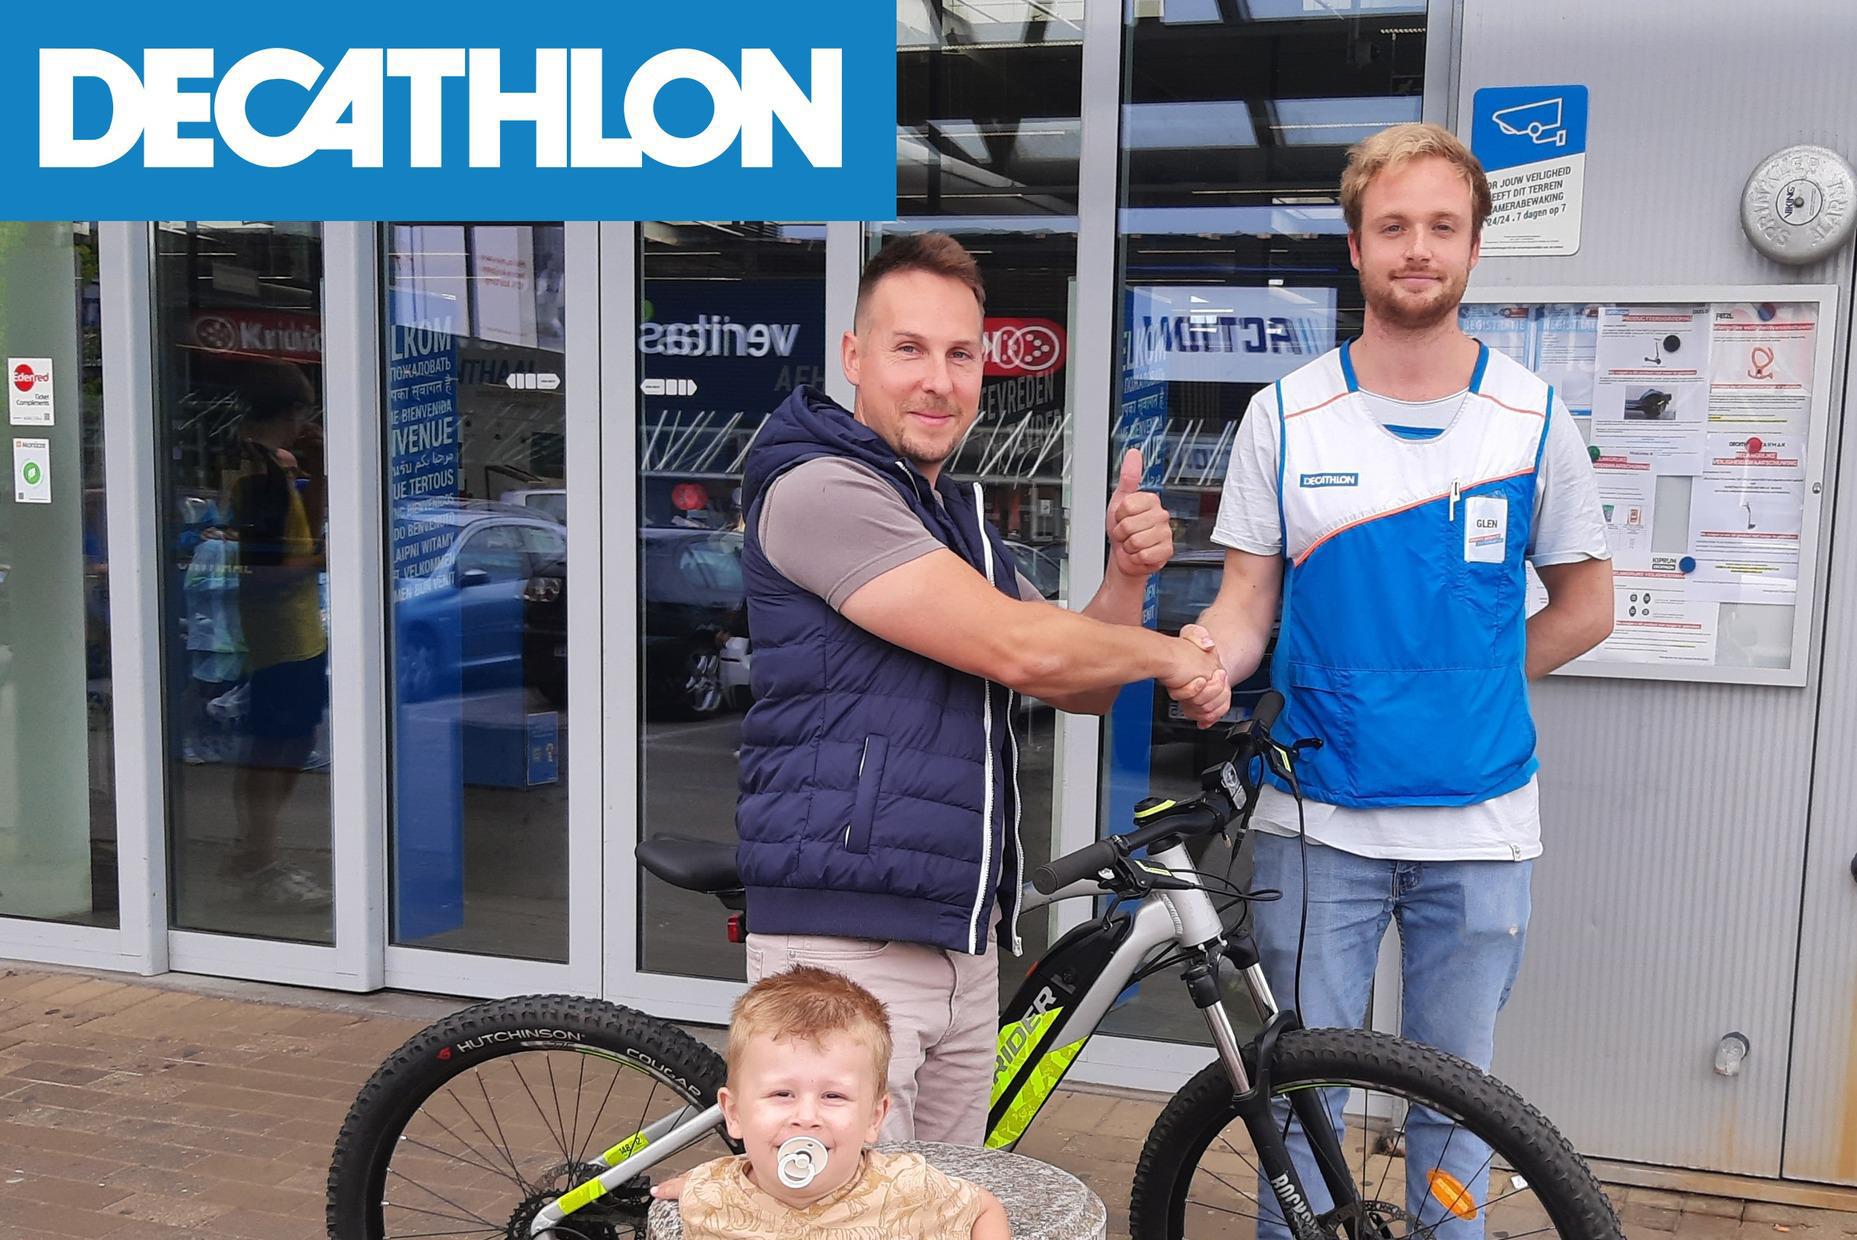 geluk Oneindigheid universiteitsstudent Decathlon geeft Erwin nieuwe mountainbike in bruikleen nadat vorige  gestolen werd in winkel: “Al een uur gaan fietsen” | Het Nieuwsblad Mobile